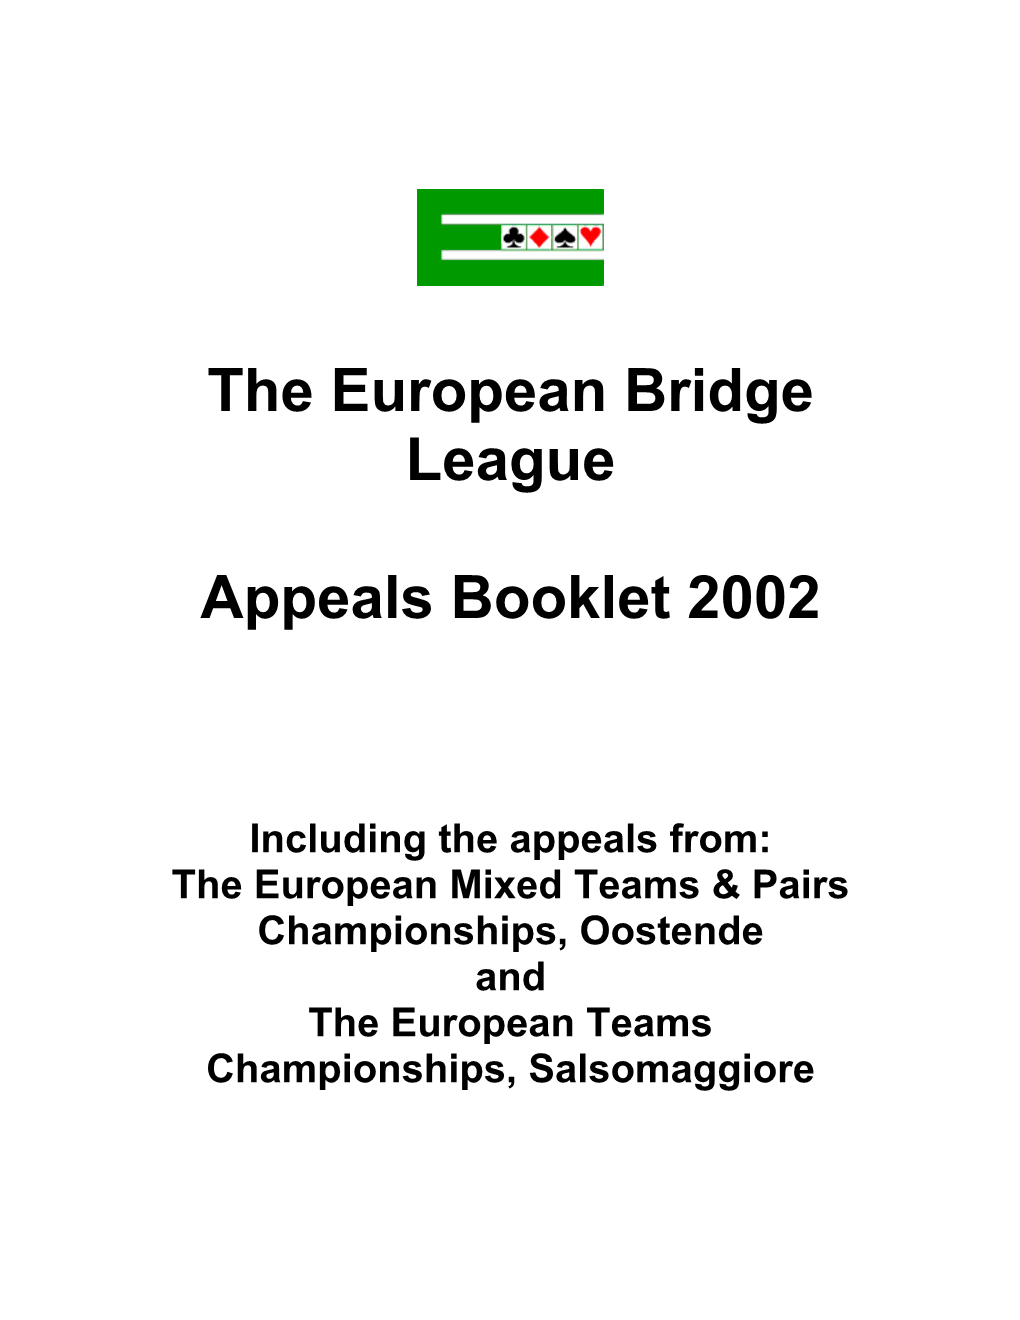 The European Bridge League Appeals Booklet 2002